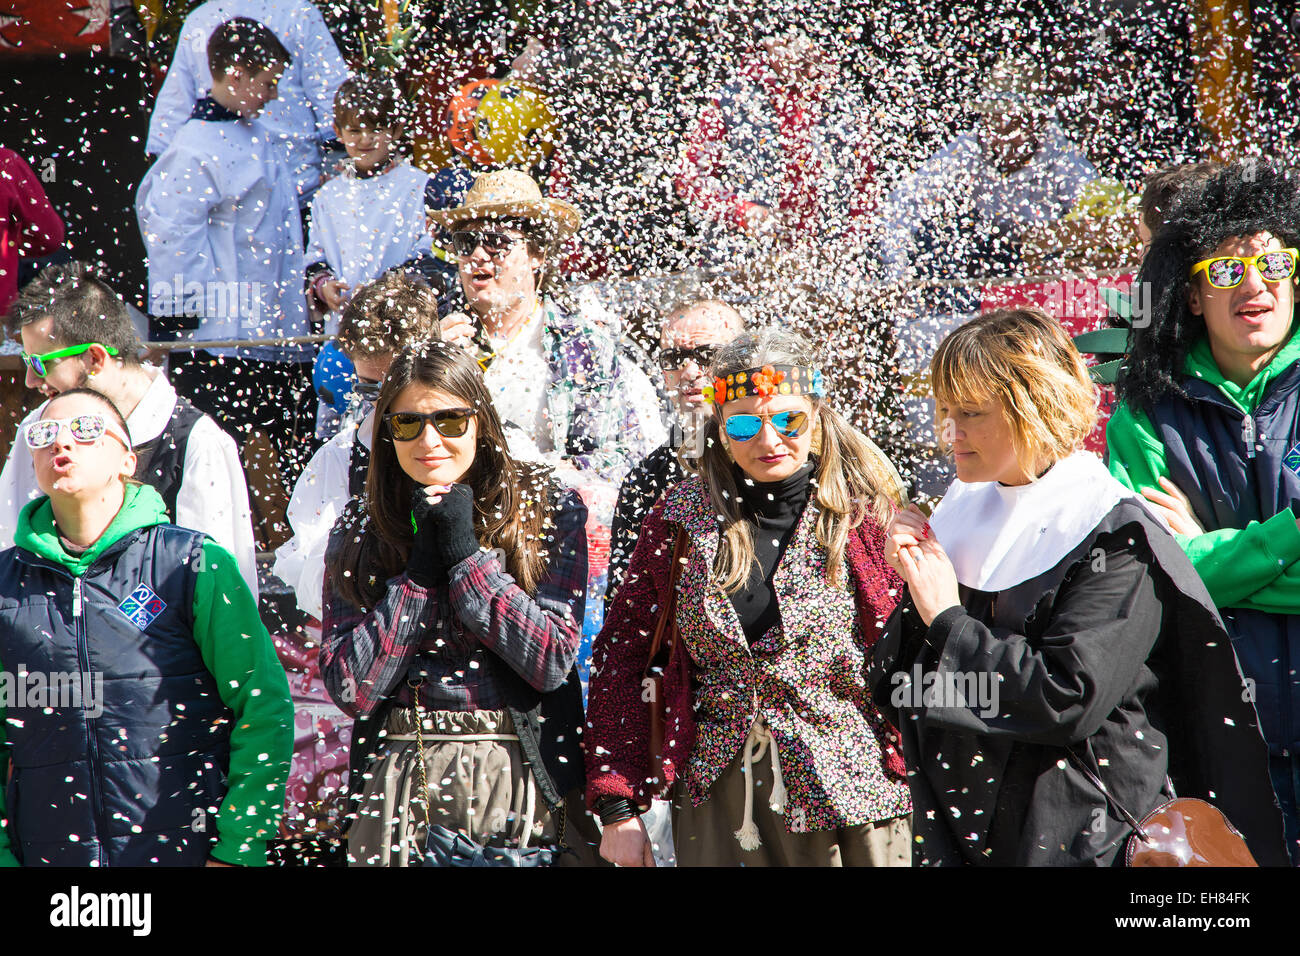 San giovanni in persiceto,bologna,Italy-March 7,2015:la gente in costume di  carnevale e maschere a piedi sotto i residui di carta durante un soleggiato  Foto stock - Alamy